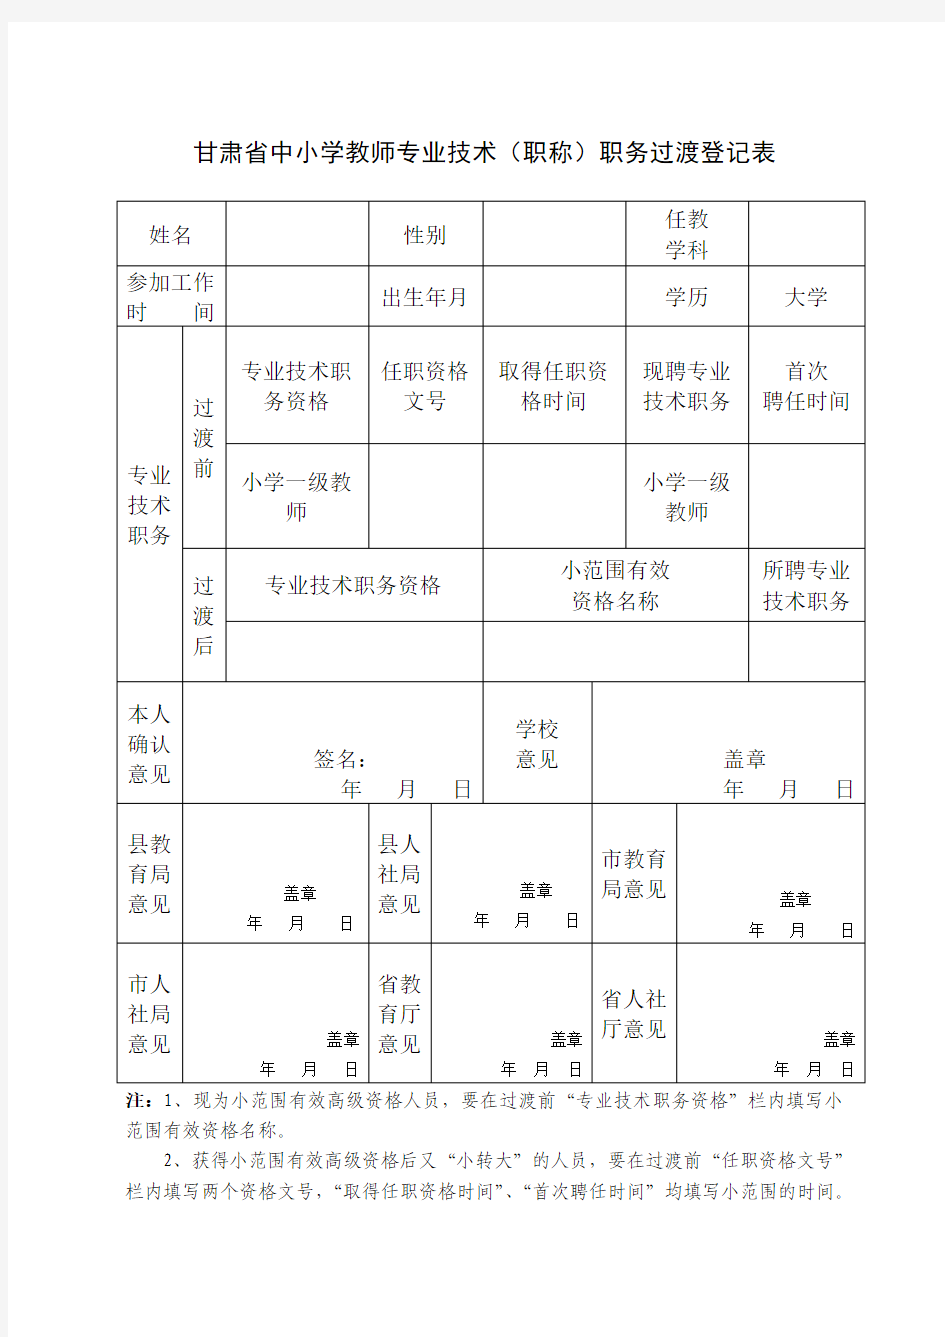 甘肃省中小学教师专业技术(职称)职务过渡人员花名册(审核版)